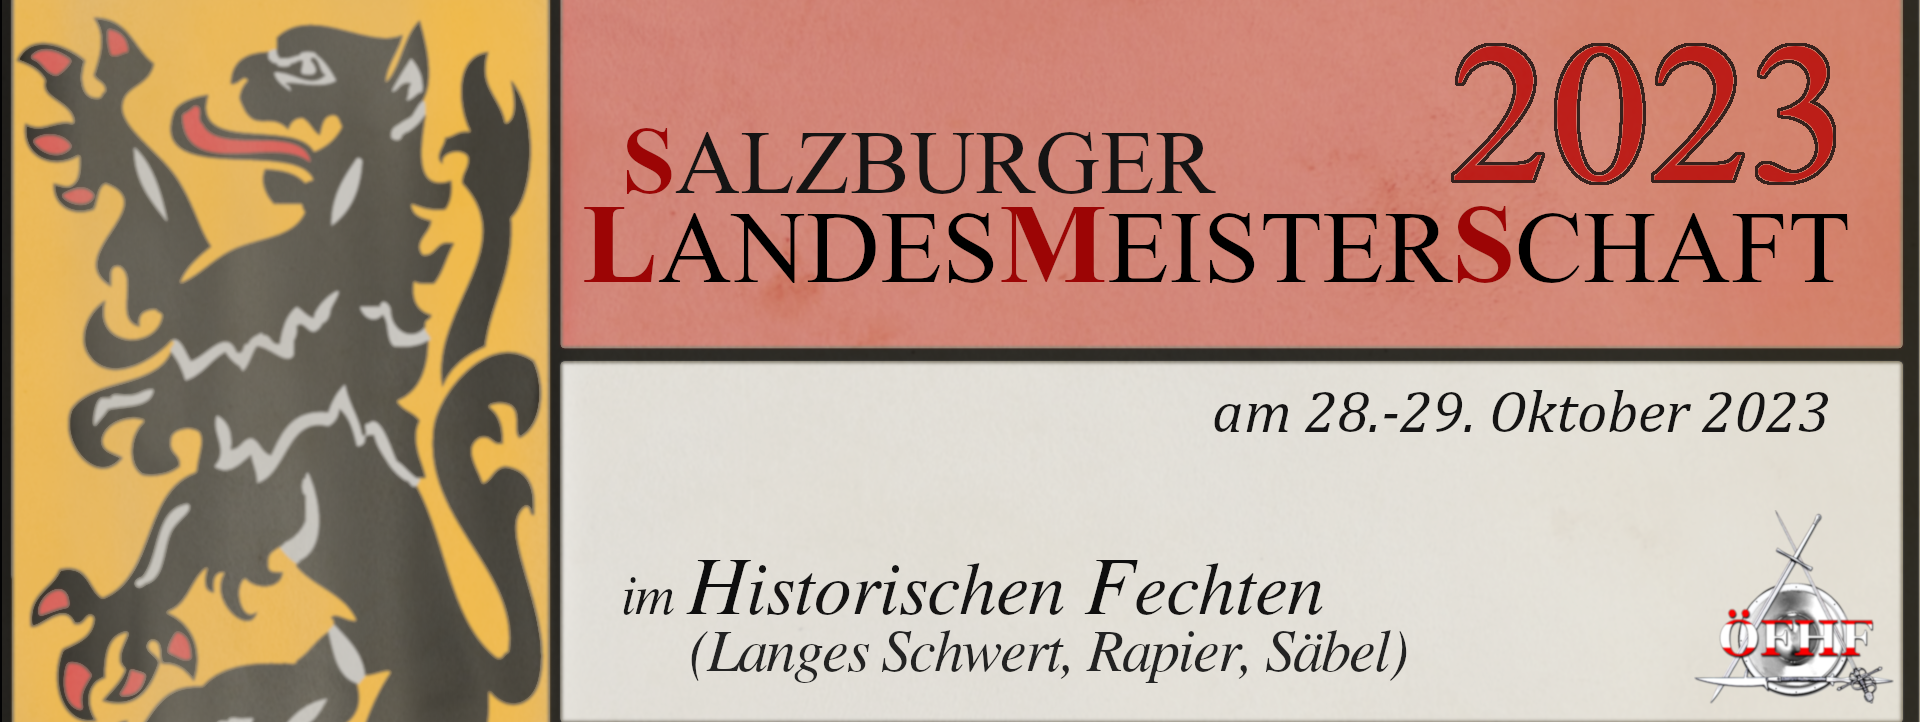 SLMS - Salzburger Landesmeisterschaft @ Josef-Preis-Allee 3 | Salzburg | Salzburg | Österreich